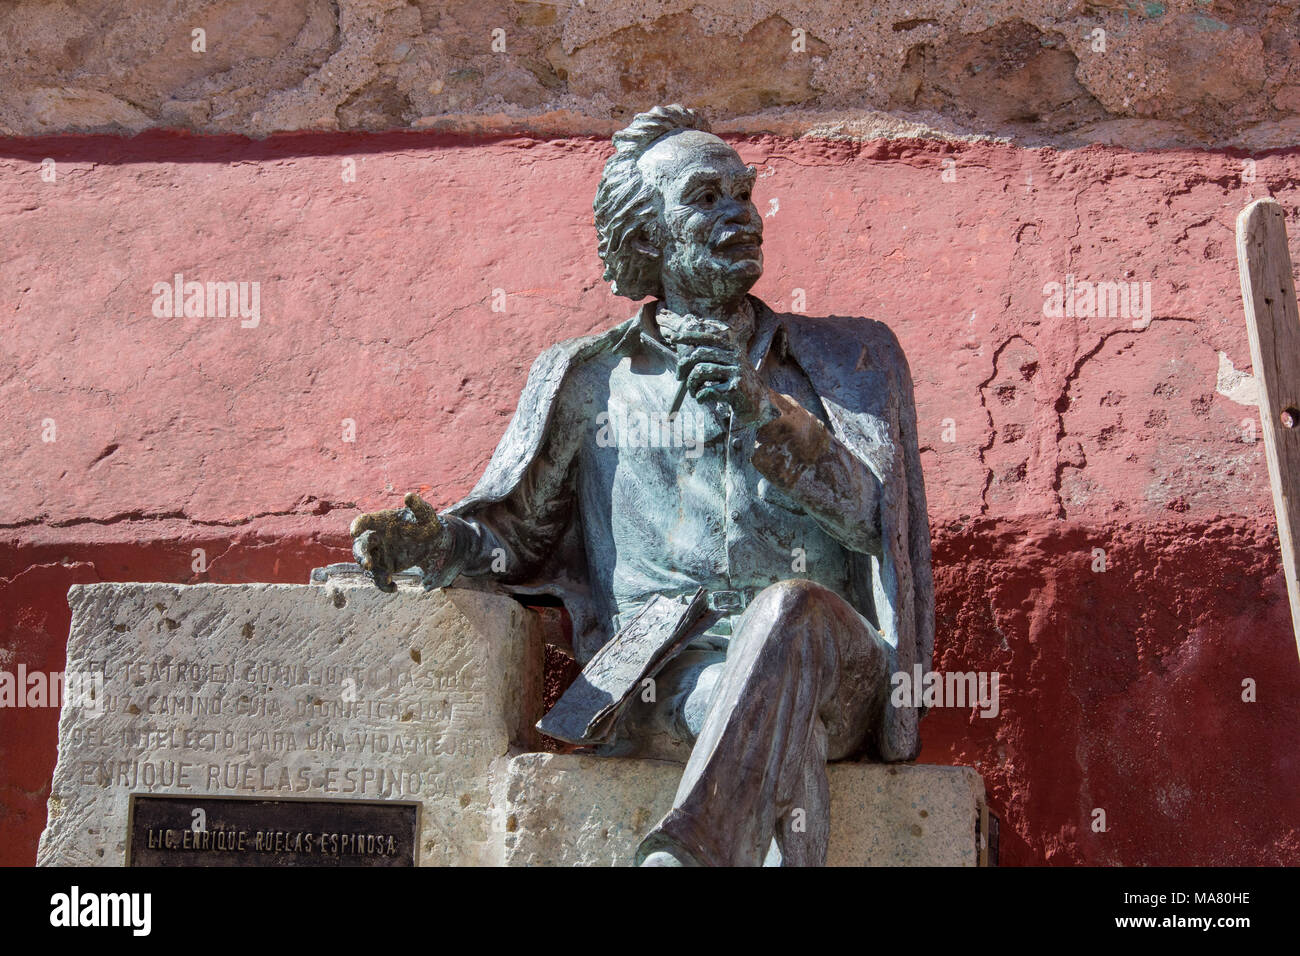 Sculpture d'Enrique Ruelas Espinosa, fondateur de Cervantes annuel Festival, Guanajuato, Mexique Banque D'Images